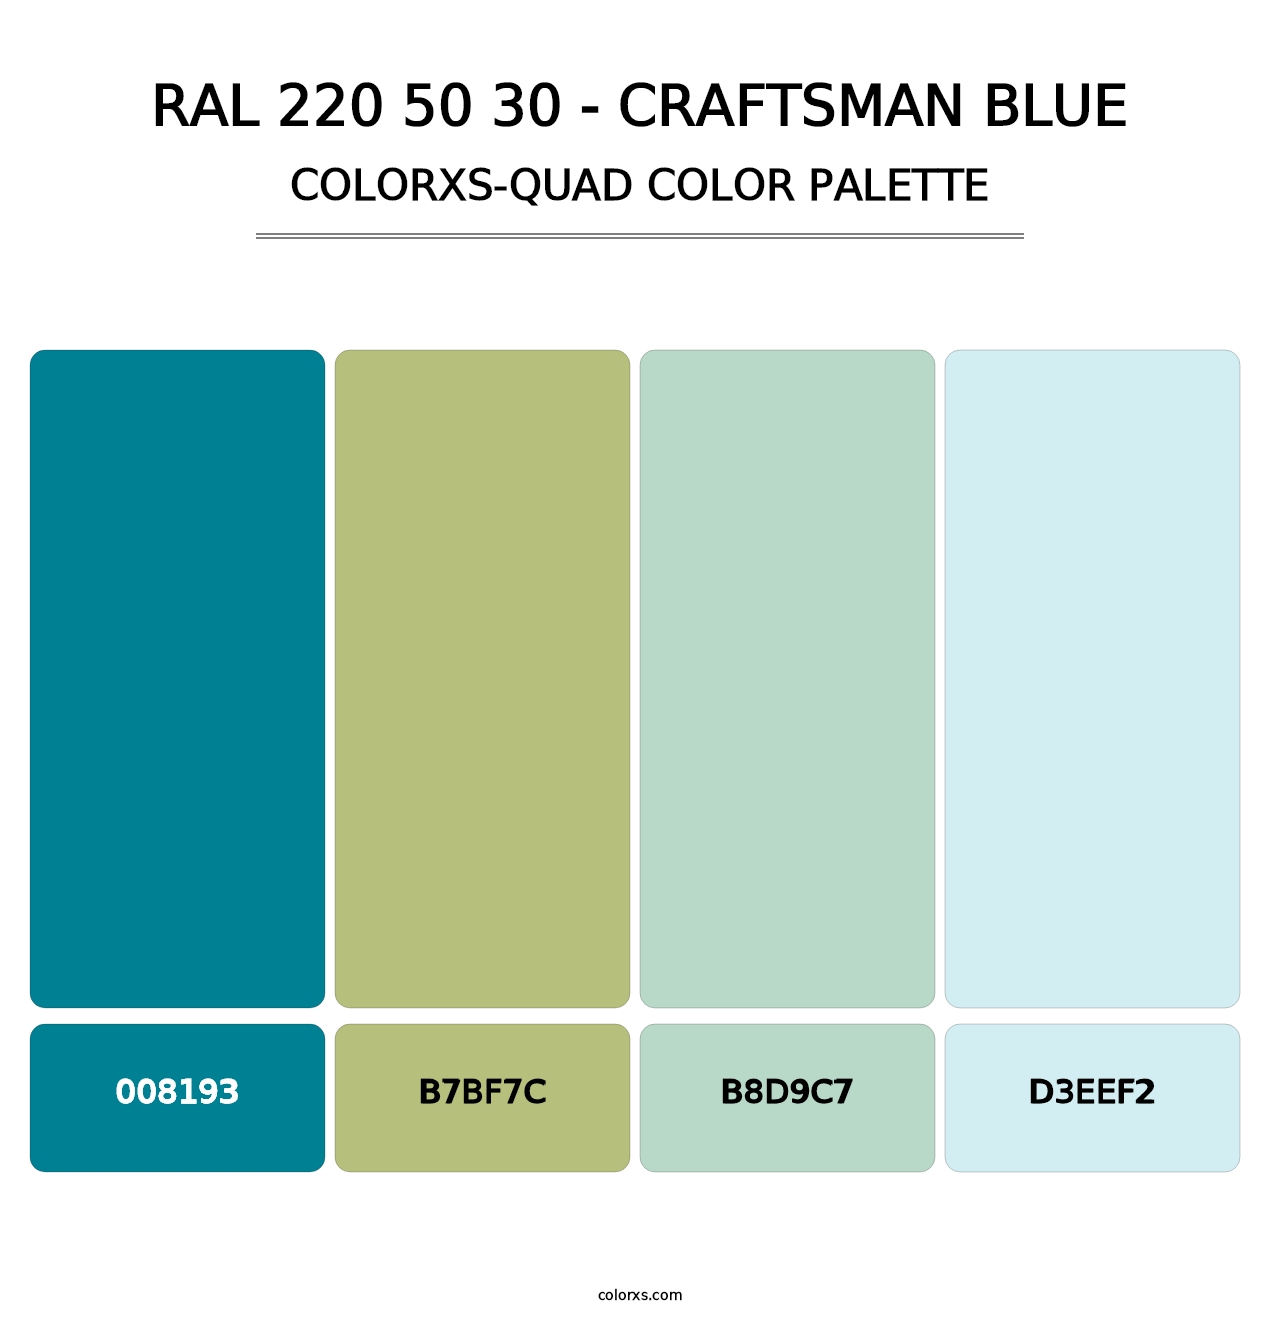 RAL 220 50 30 - Craftsman Blue - Colorxs Quad Palette